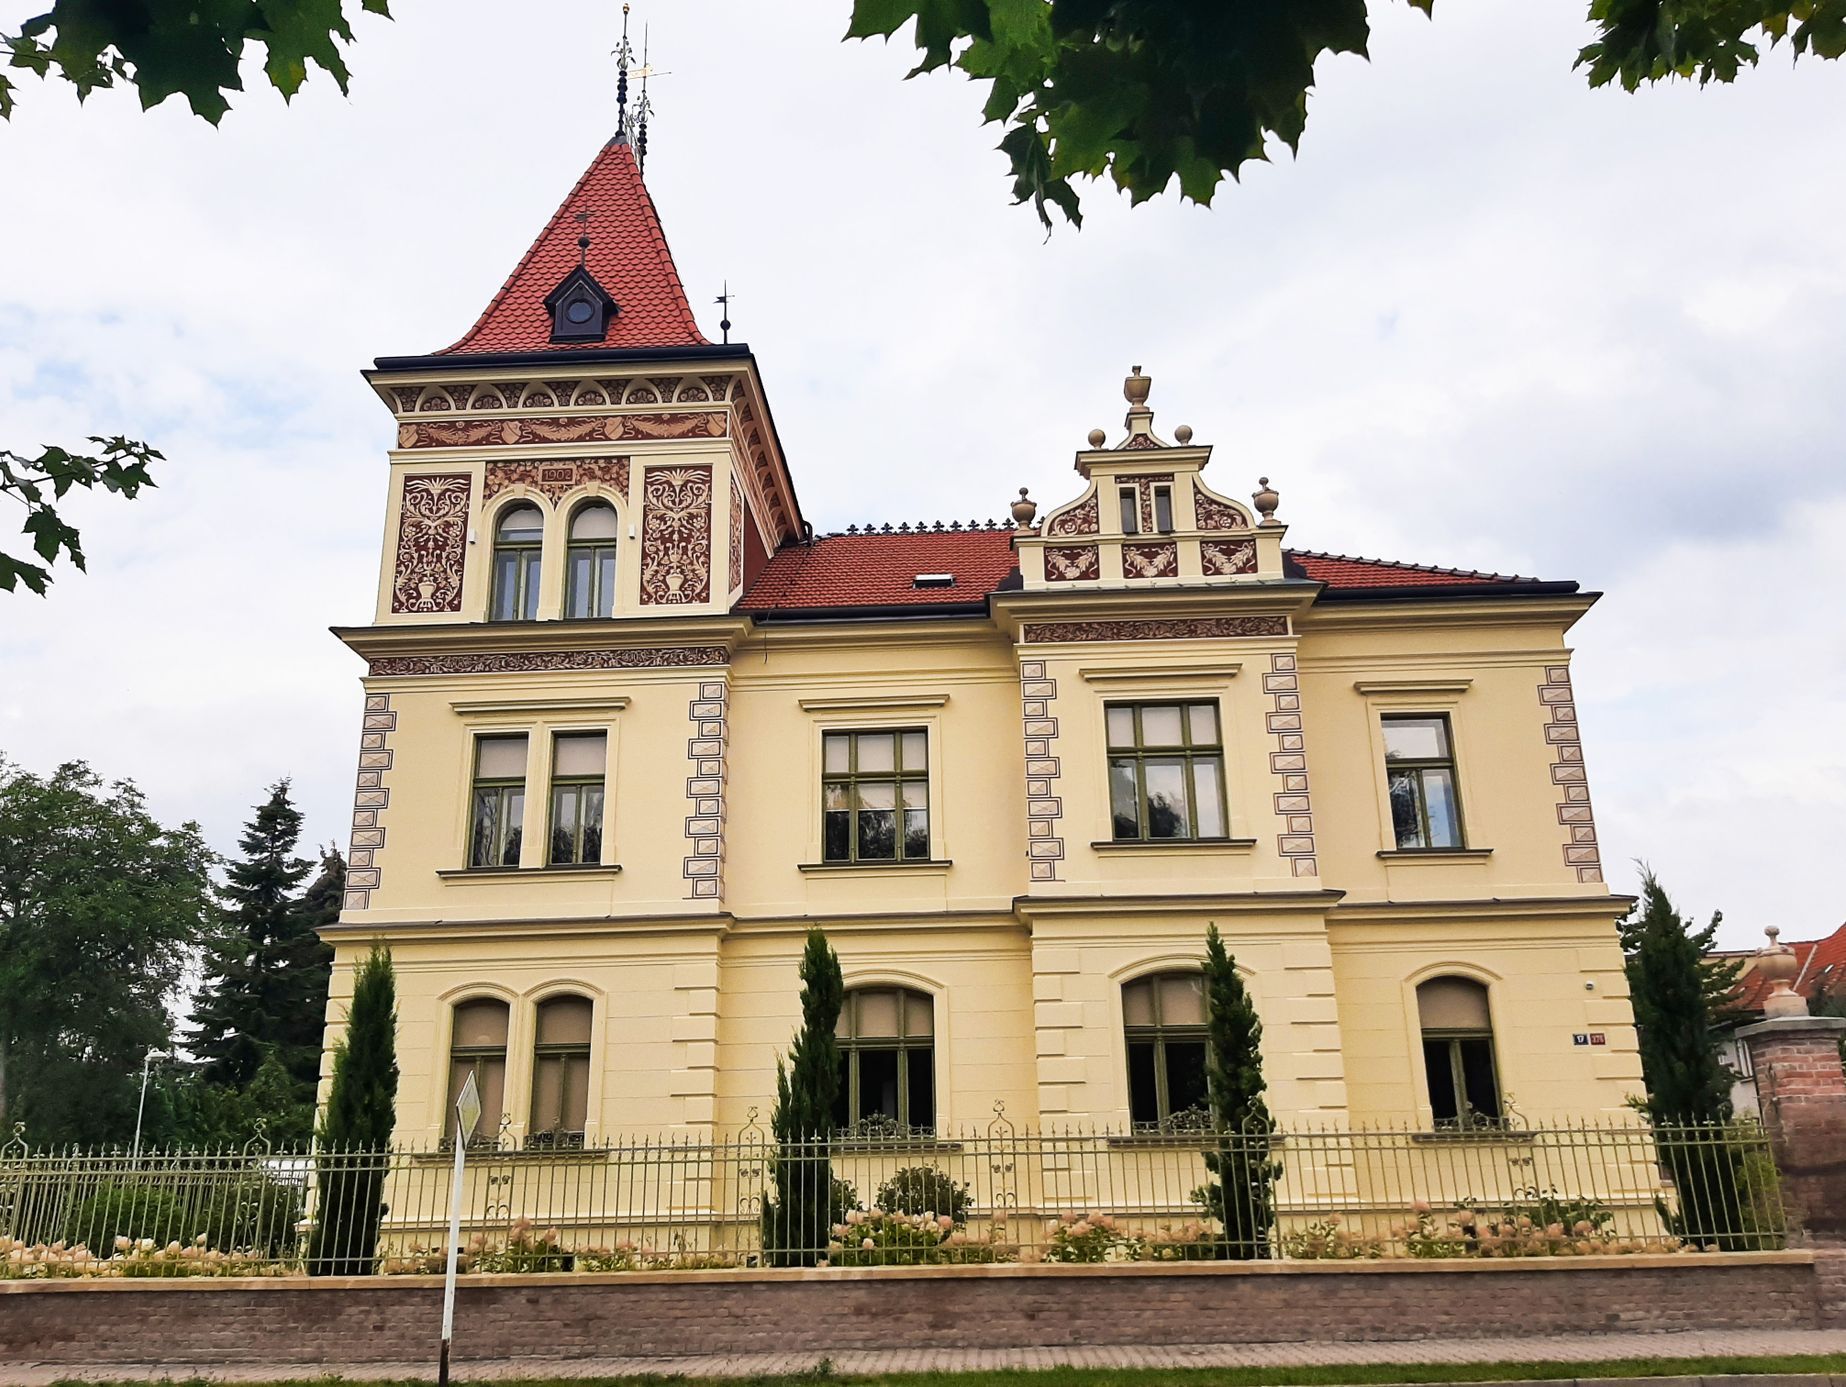 Hradec Králové, Orlické nábřeží, vily